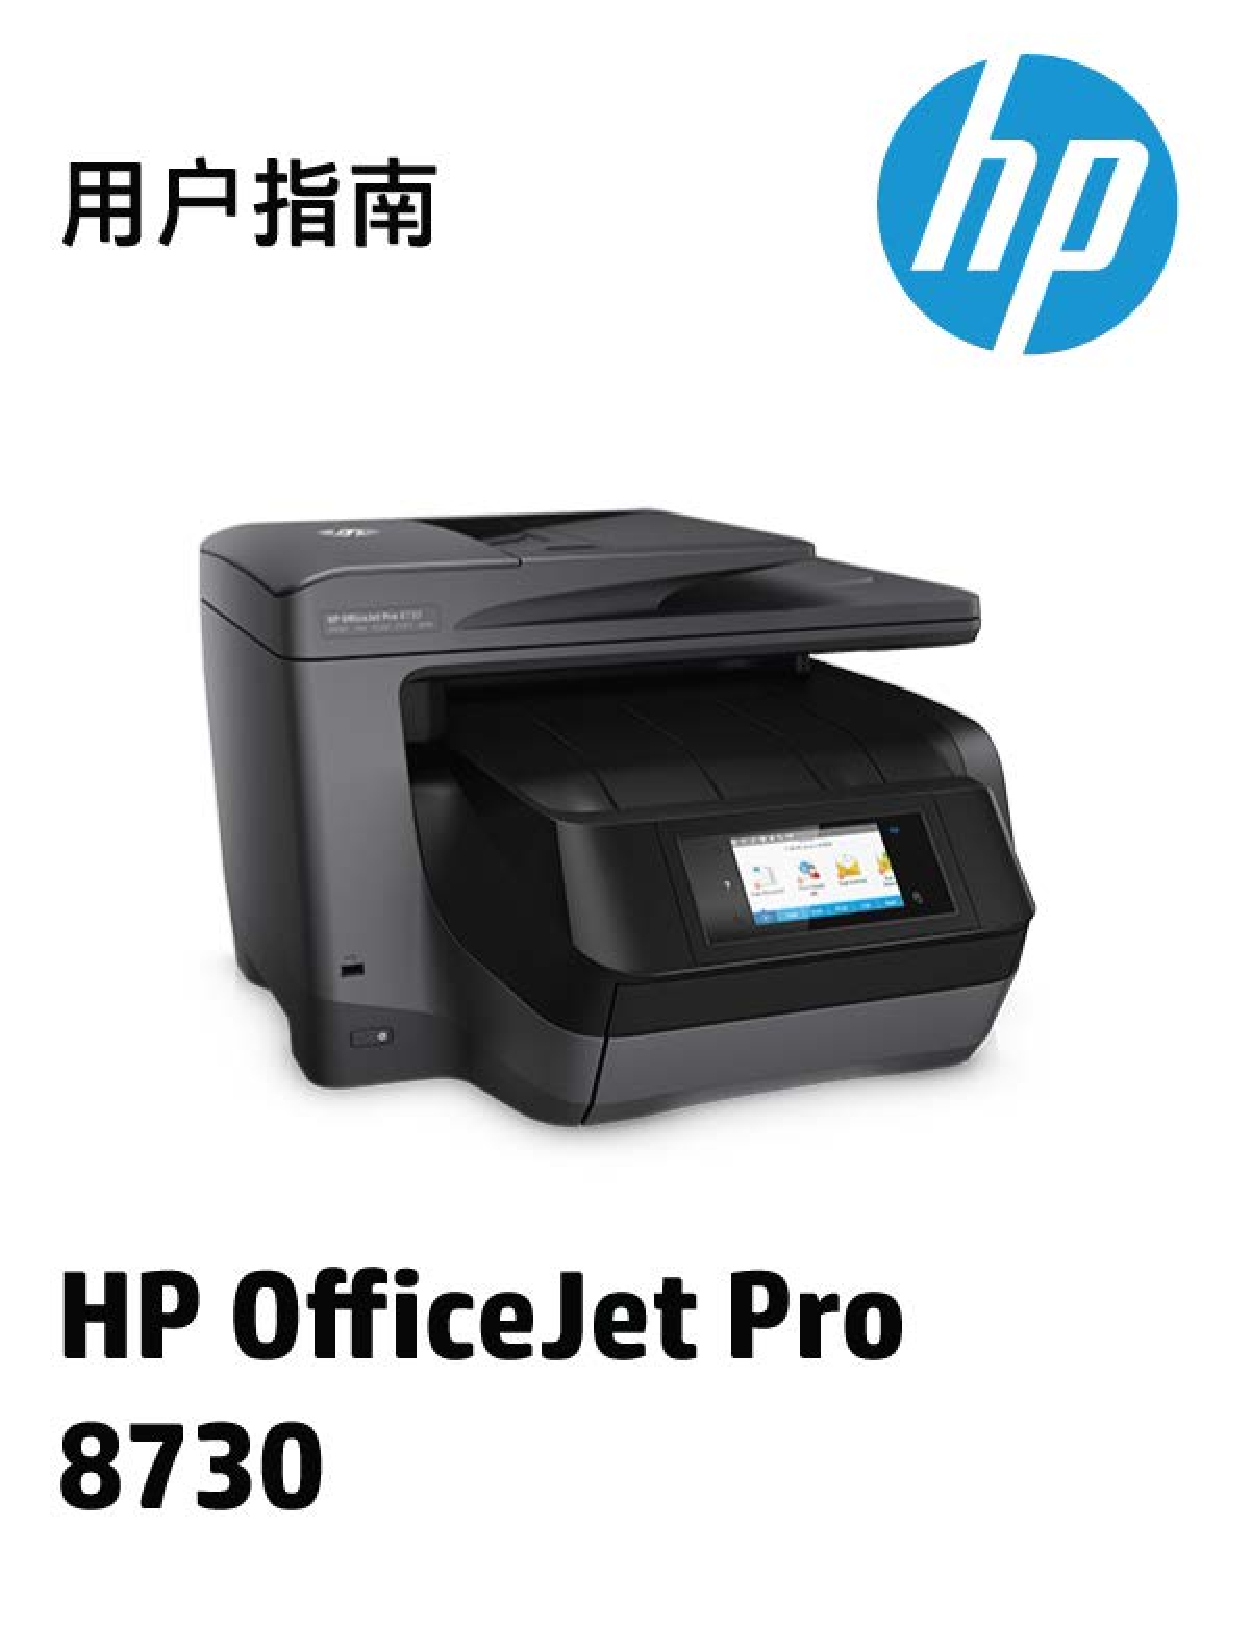 惠普 HP OfficeJet Pro 8730 用户指南 封面